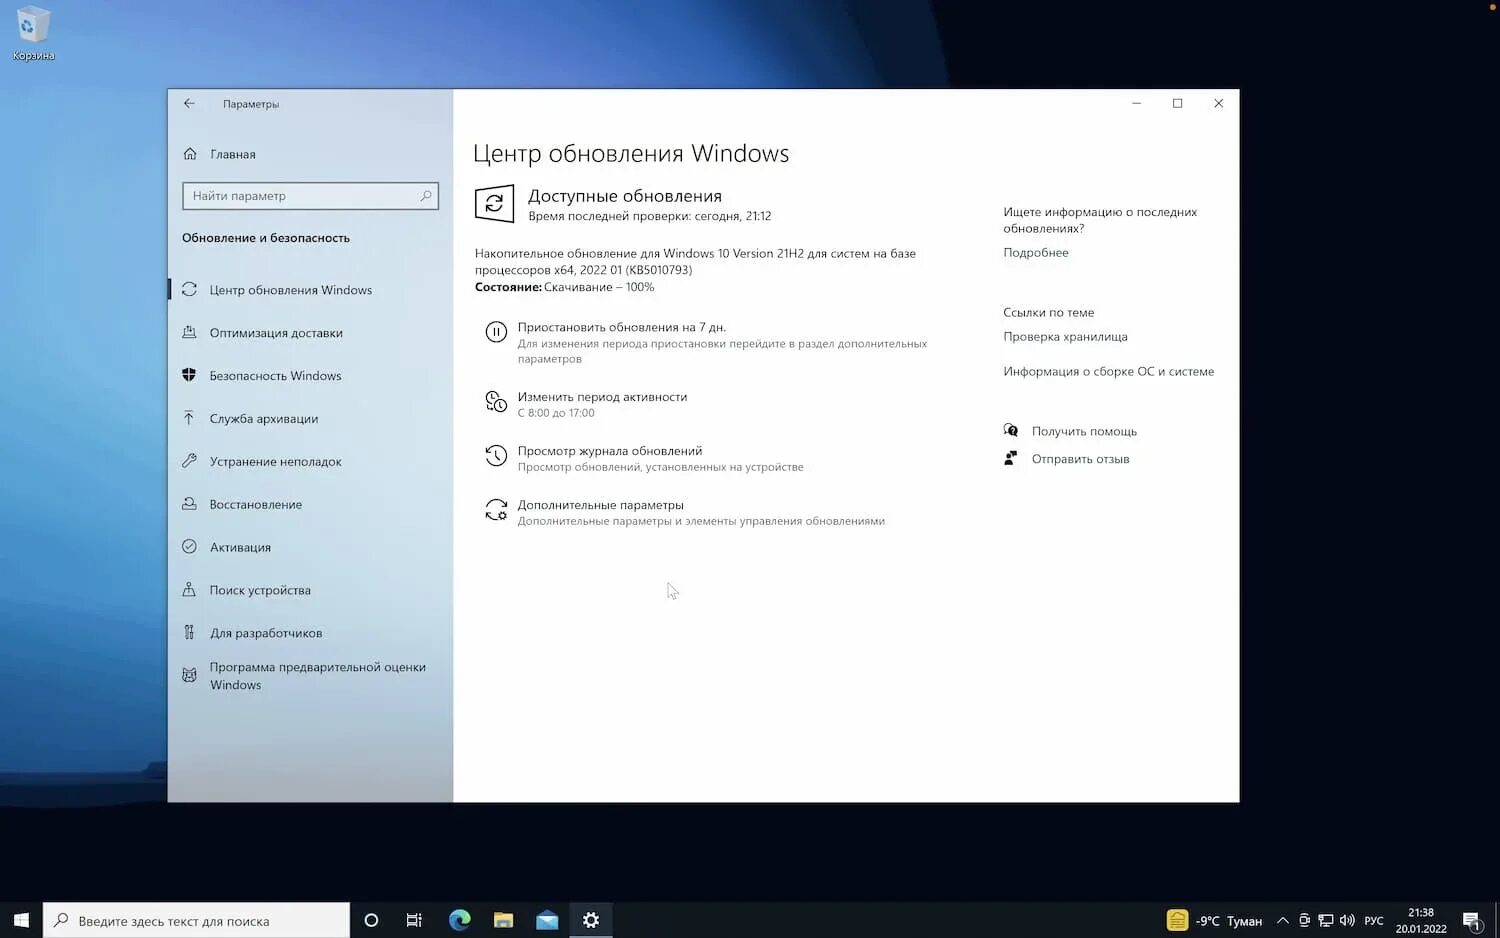 Обновление Windows 10 Version 21h2. Центр обновления Windows 21h2. Накопительное обновление для Windows 10. Доступно Необязательное исправление Windows 10.